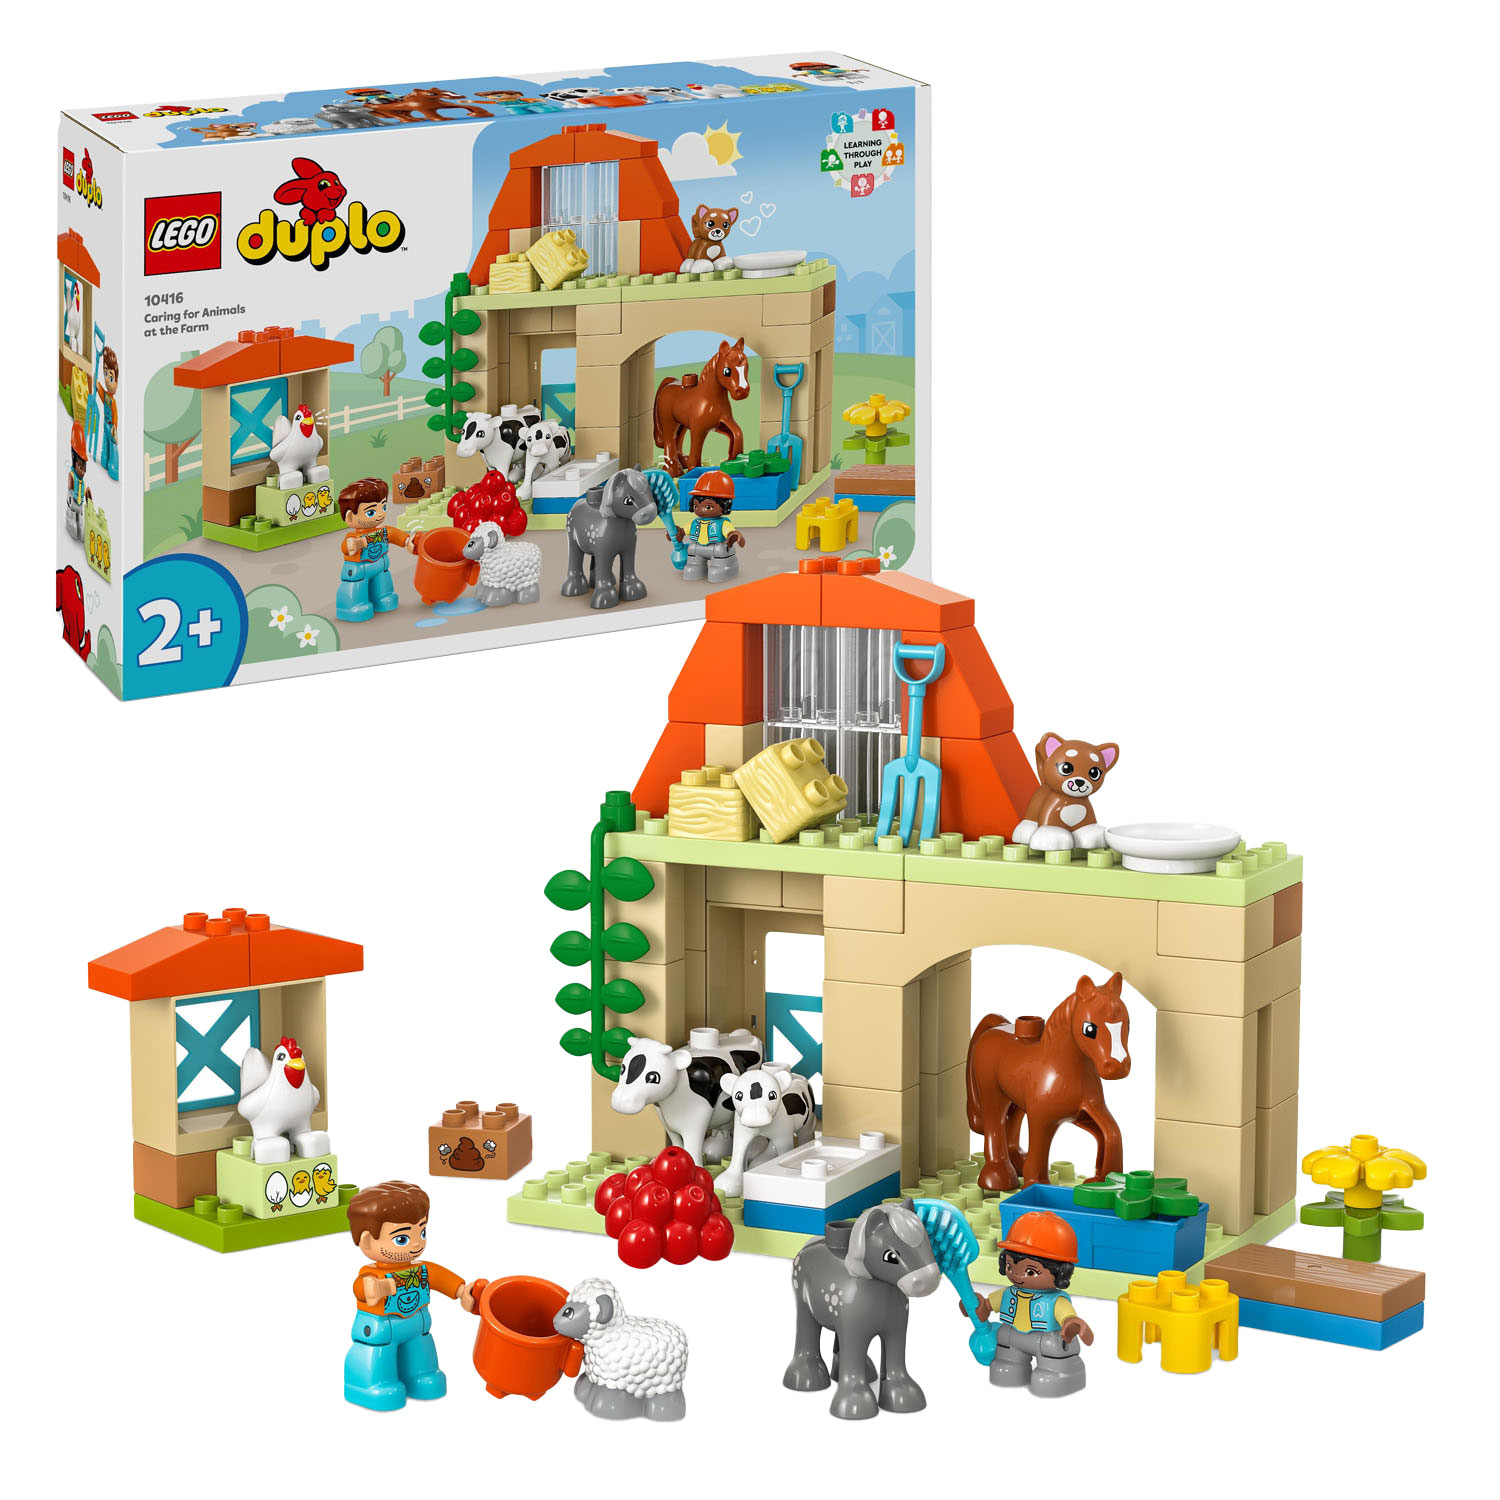 LEGO®10994 - La maison familiale 3-en-1 - LEGO® DUPLO®